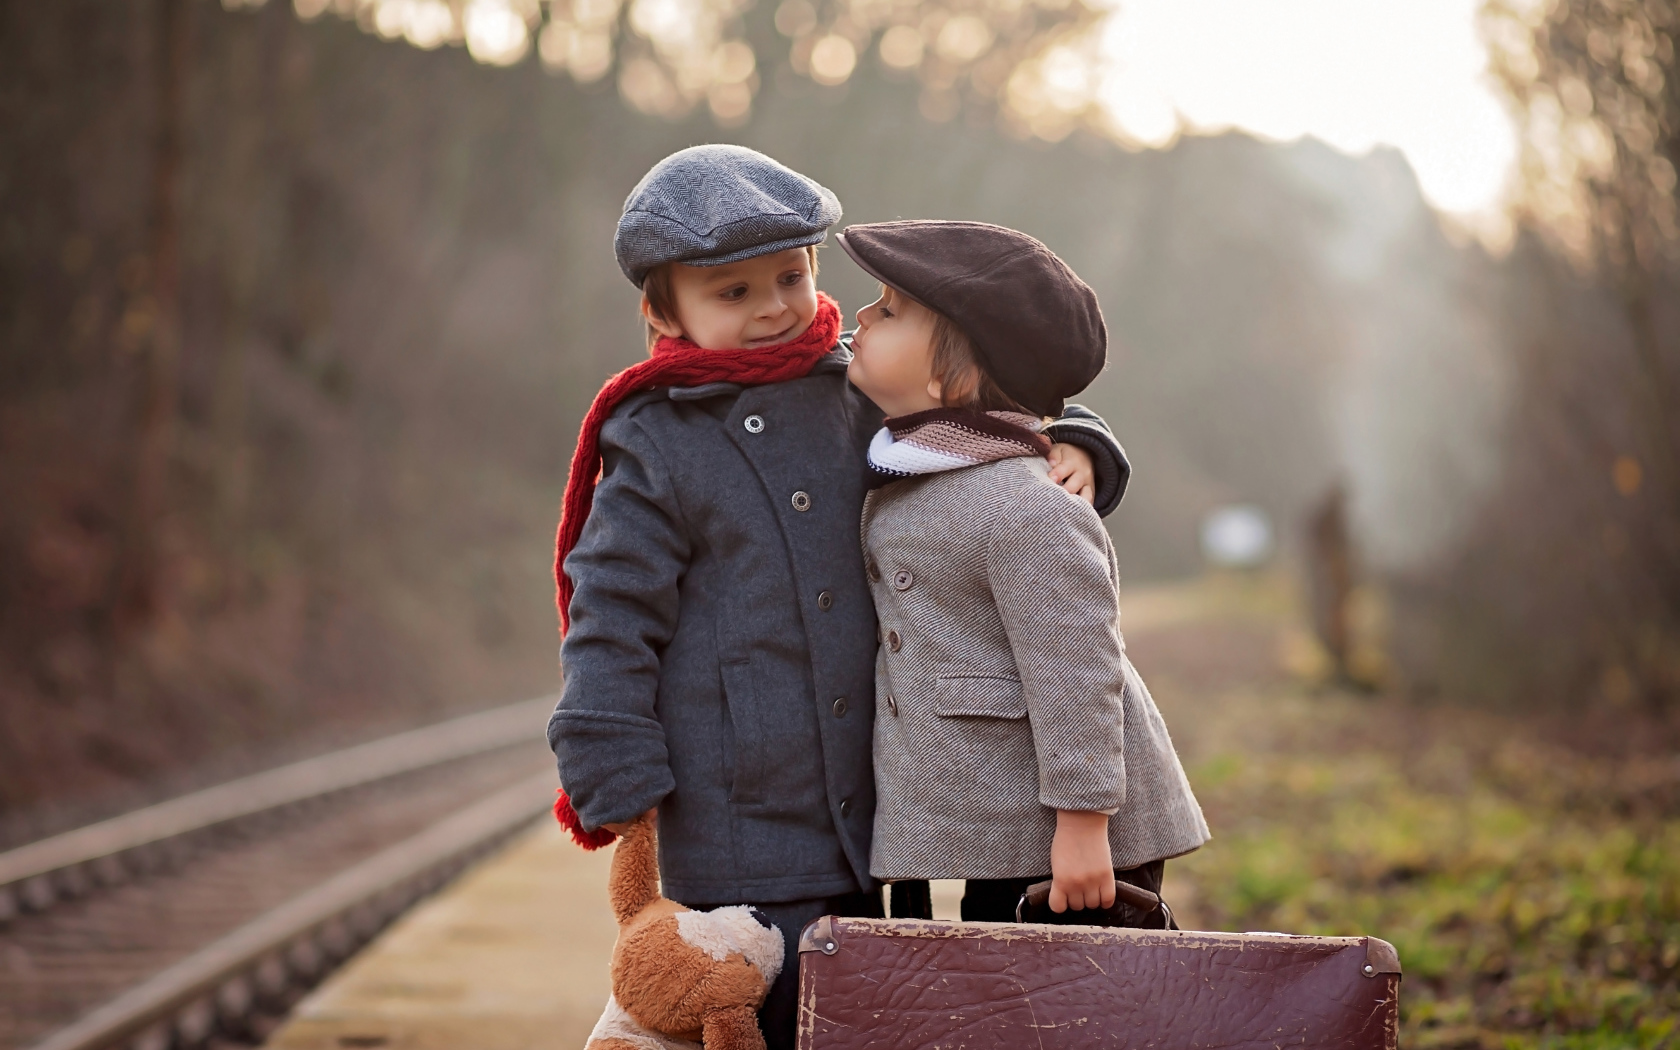 Два мальчика с большим чемоданом у железной дороги